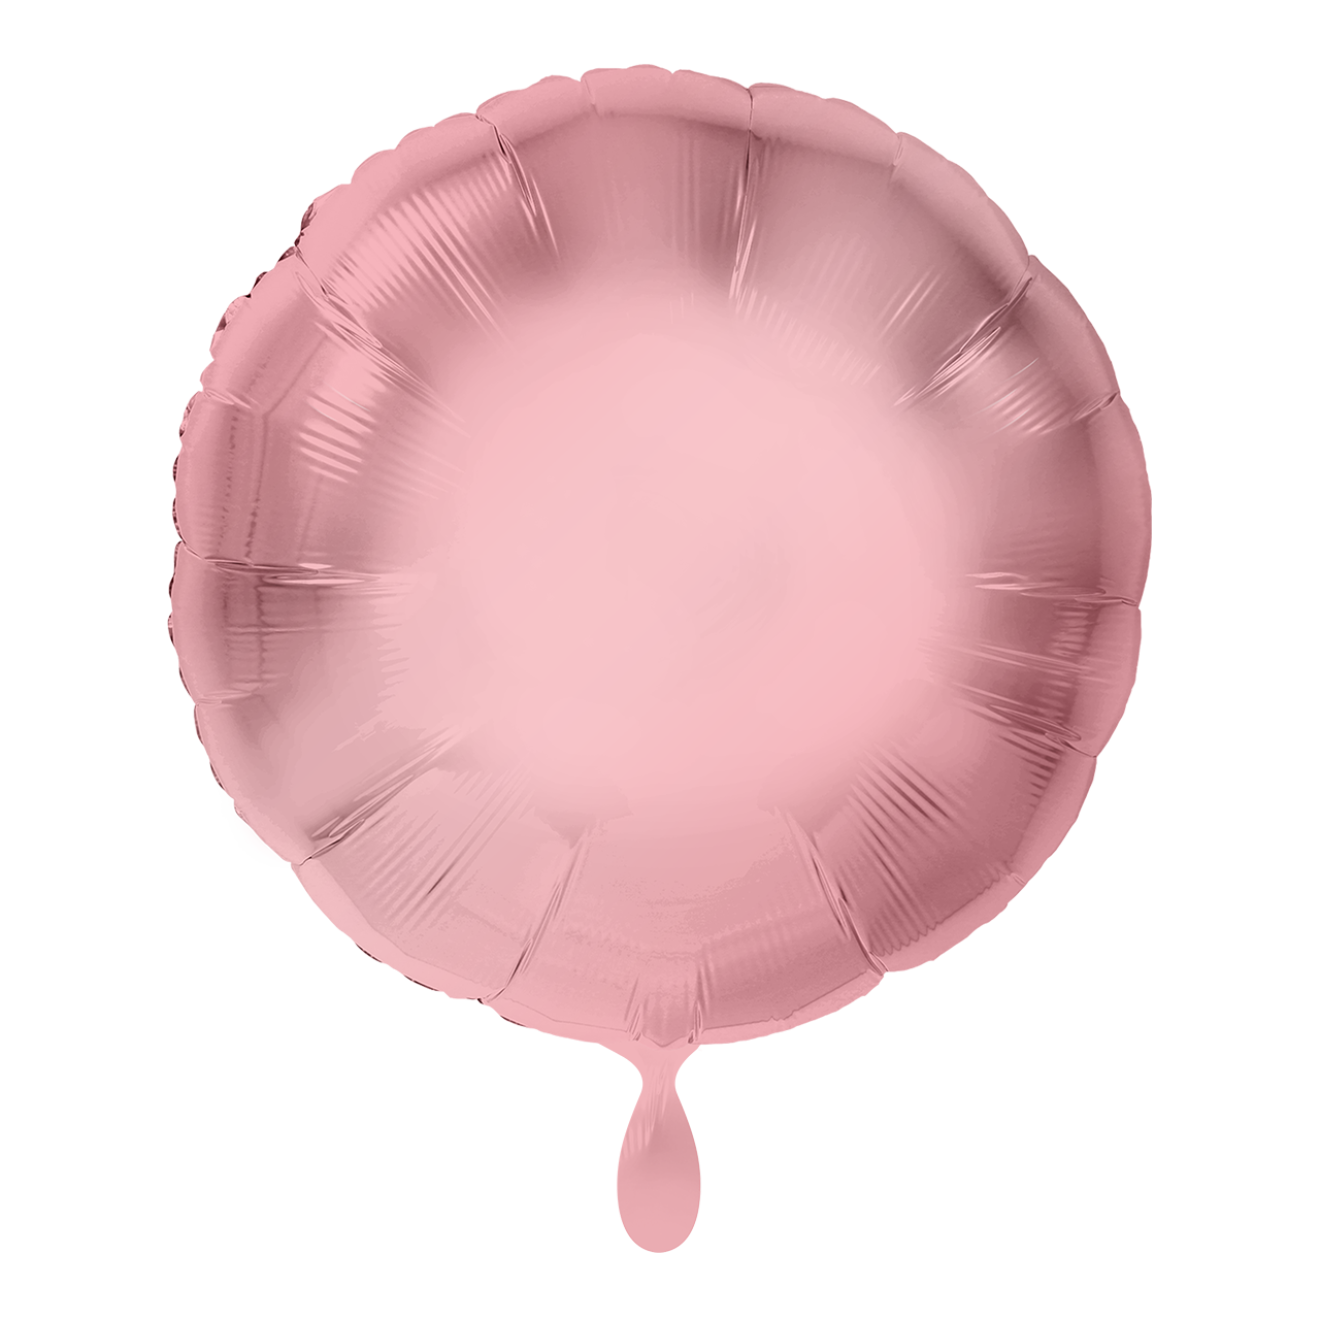 1 Balloon - Rund - Rosa